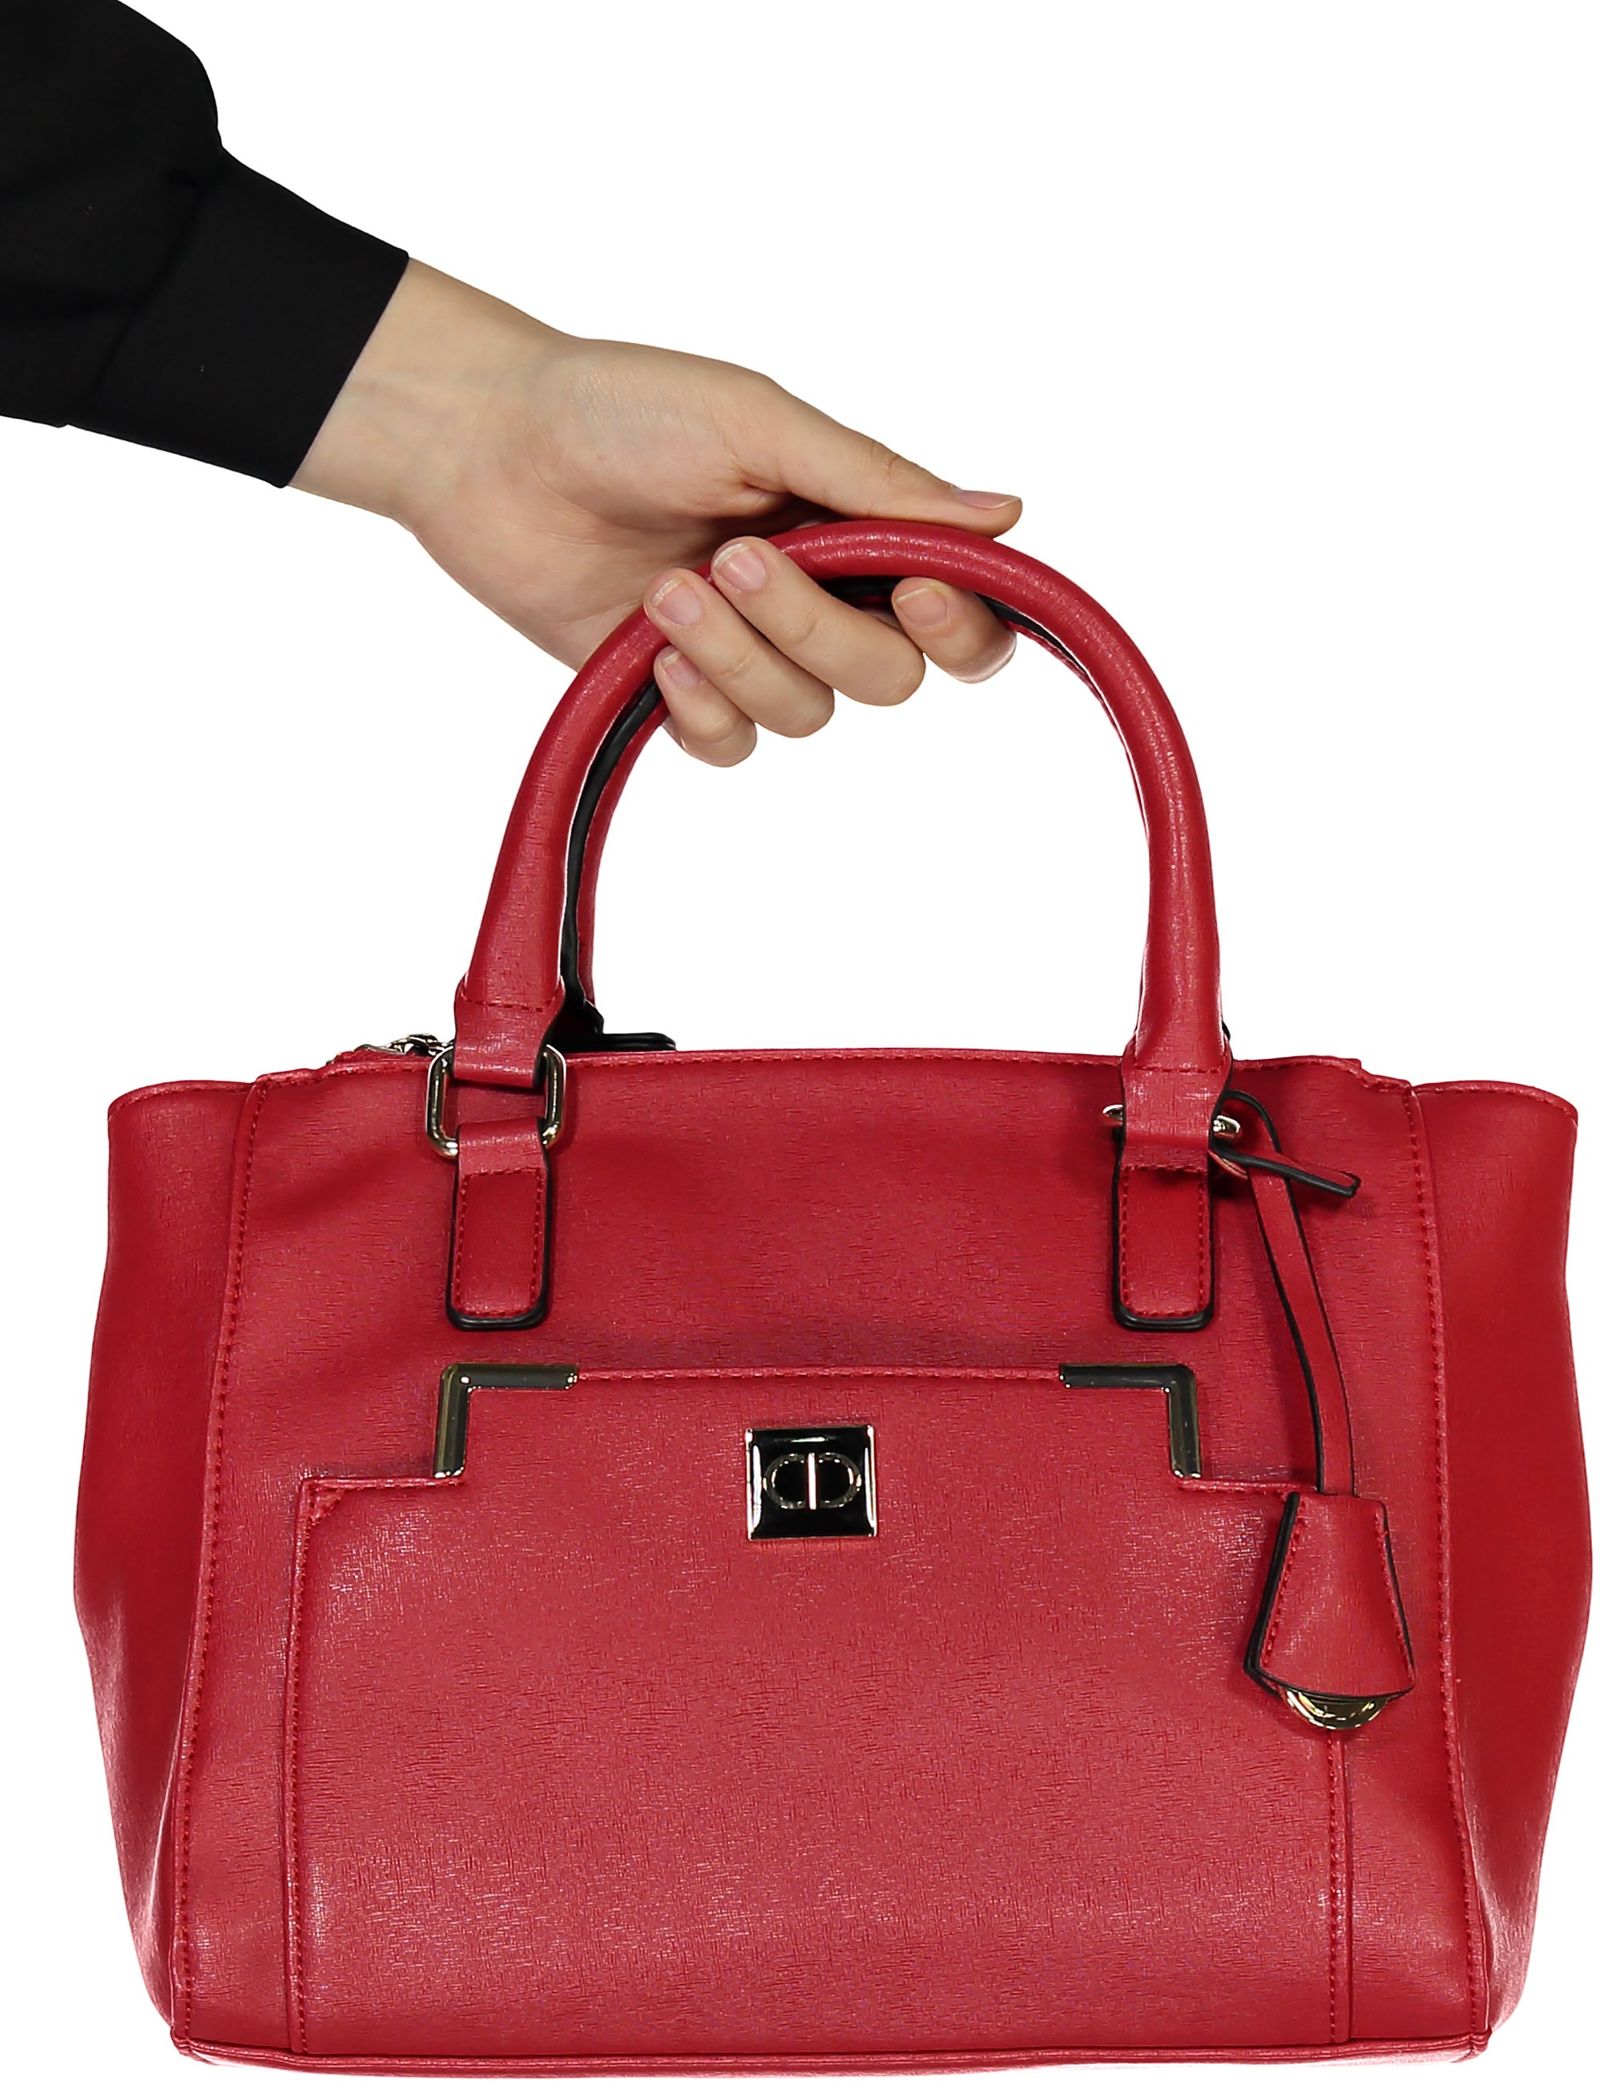 کیف دستی روزمره زنانه - کالکشن تک سایز - قرمز براق  - 8